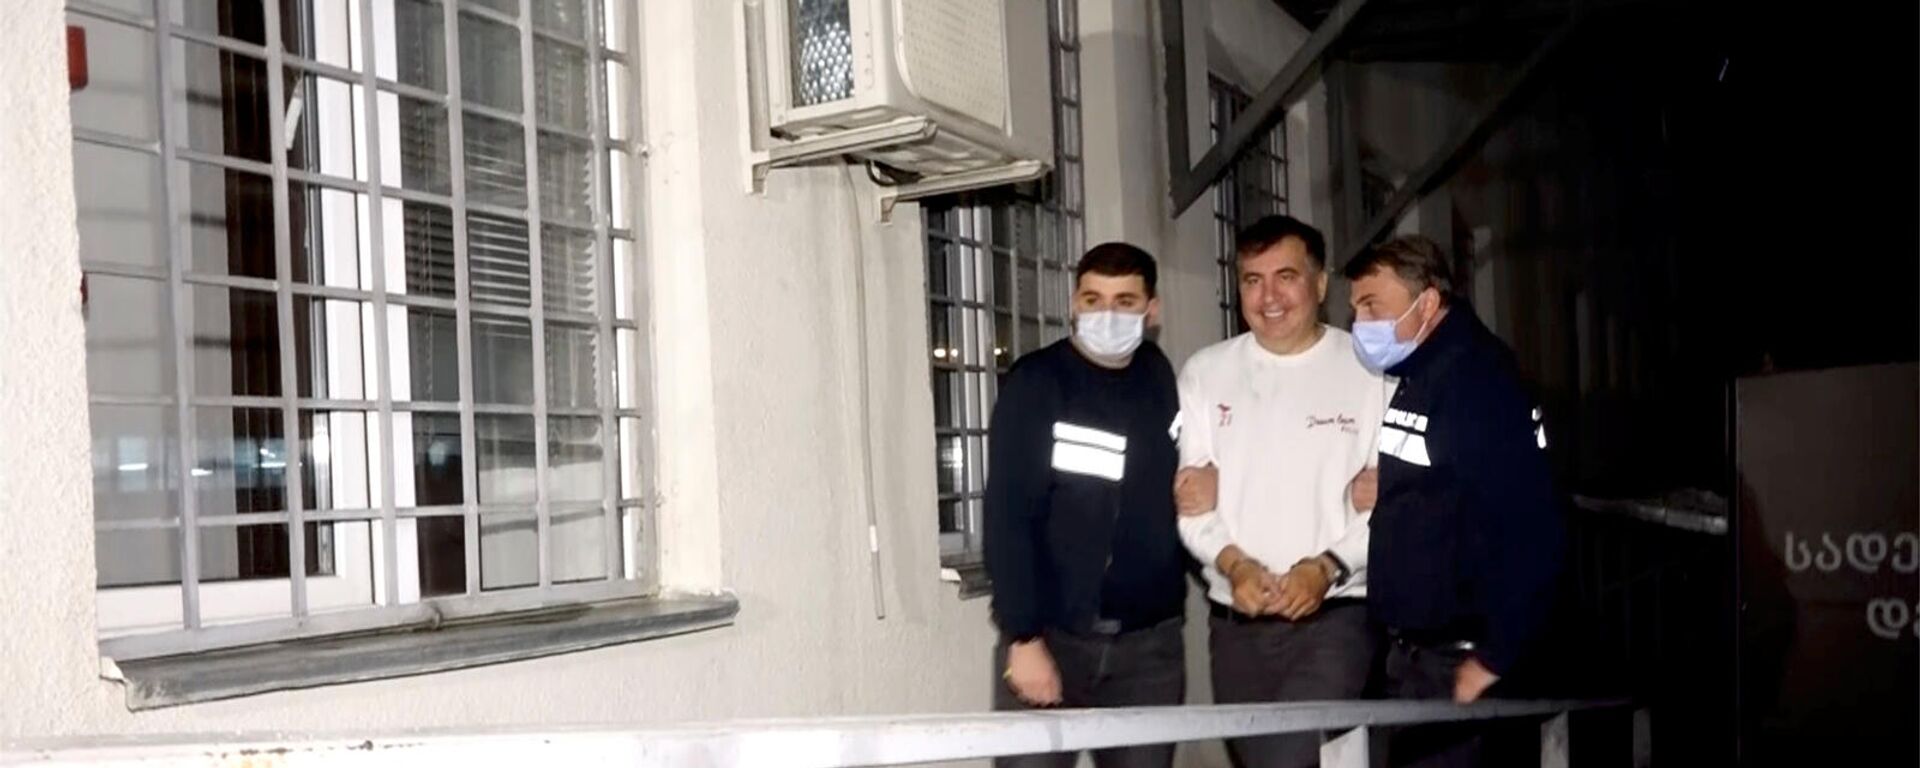 Сотрудники полиции сопровождают бывшего президента Грузии Михаила Саакашвили, который был задержан после возвращения в Грузию (1 октября 2021). Рустави - Sputnik Армения, 1920, 01.10.2021